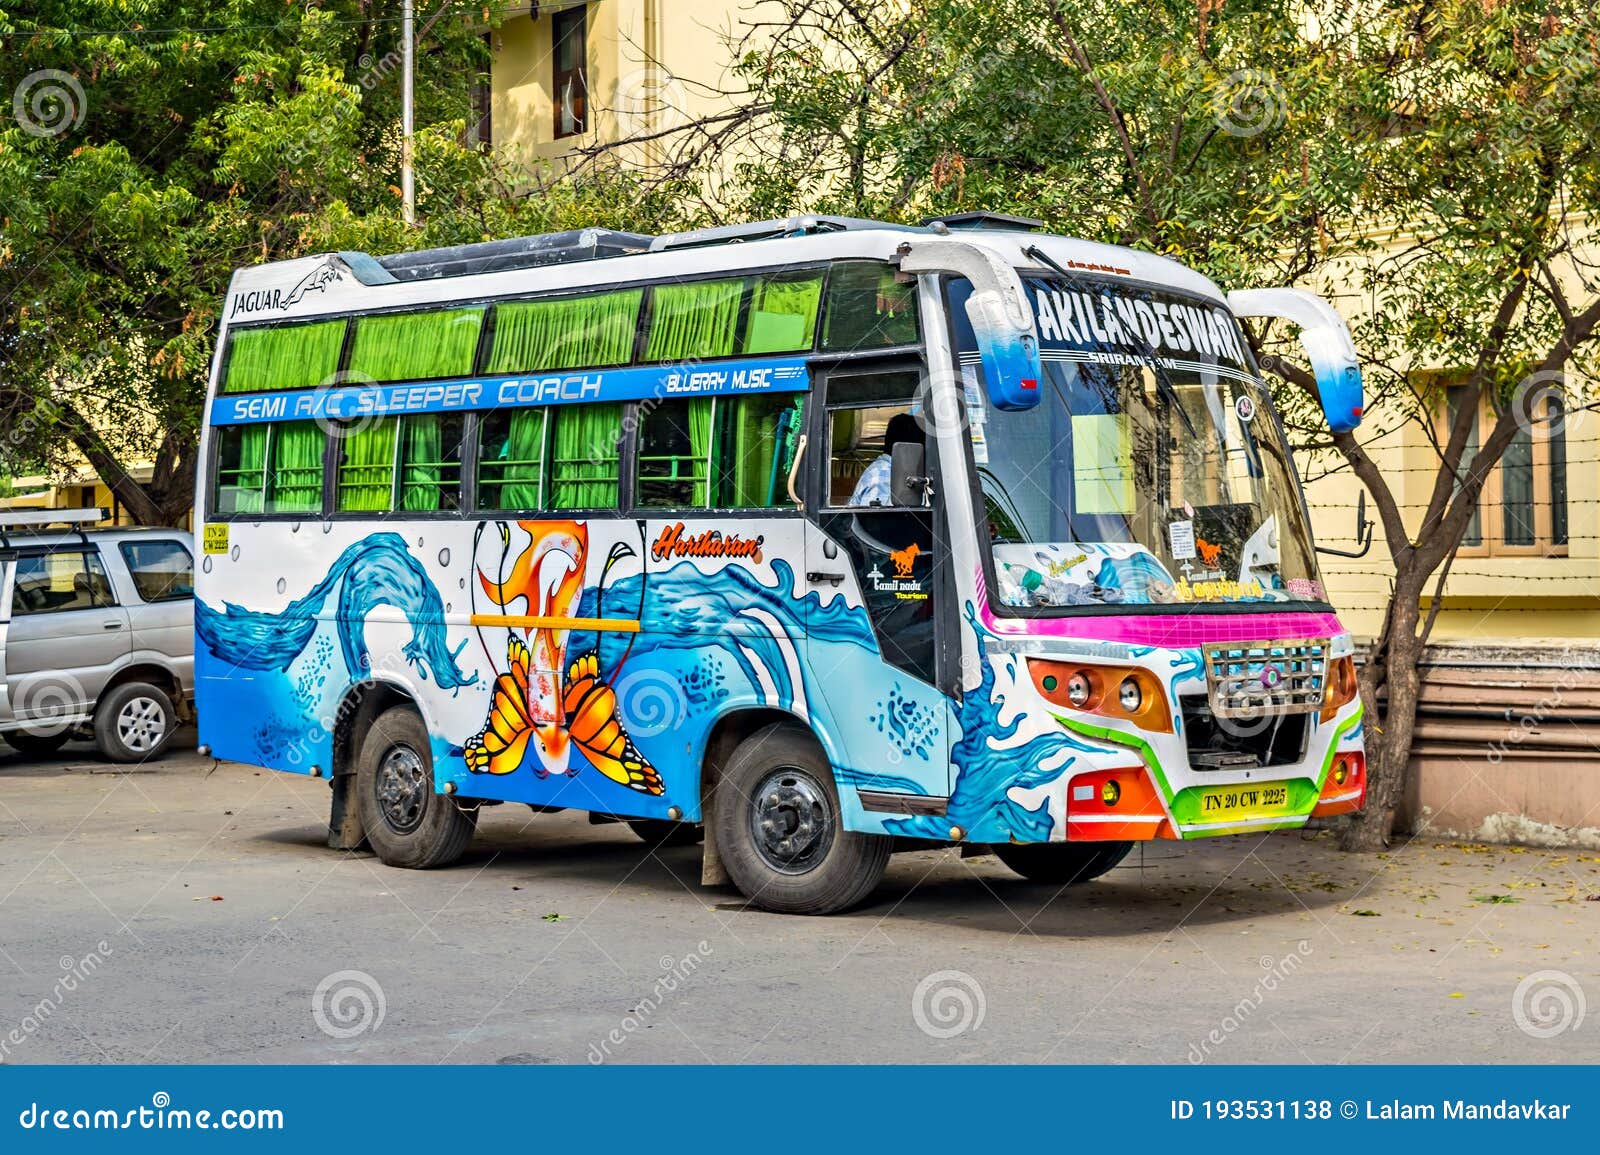 pondicherry tour bus